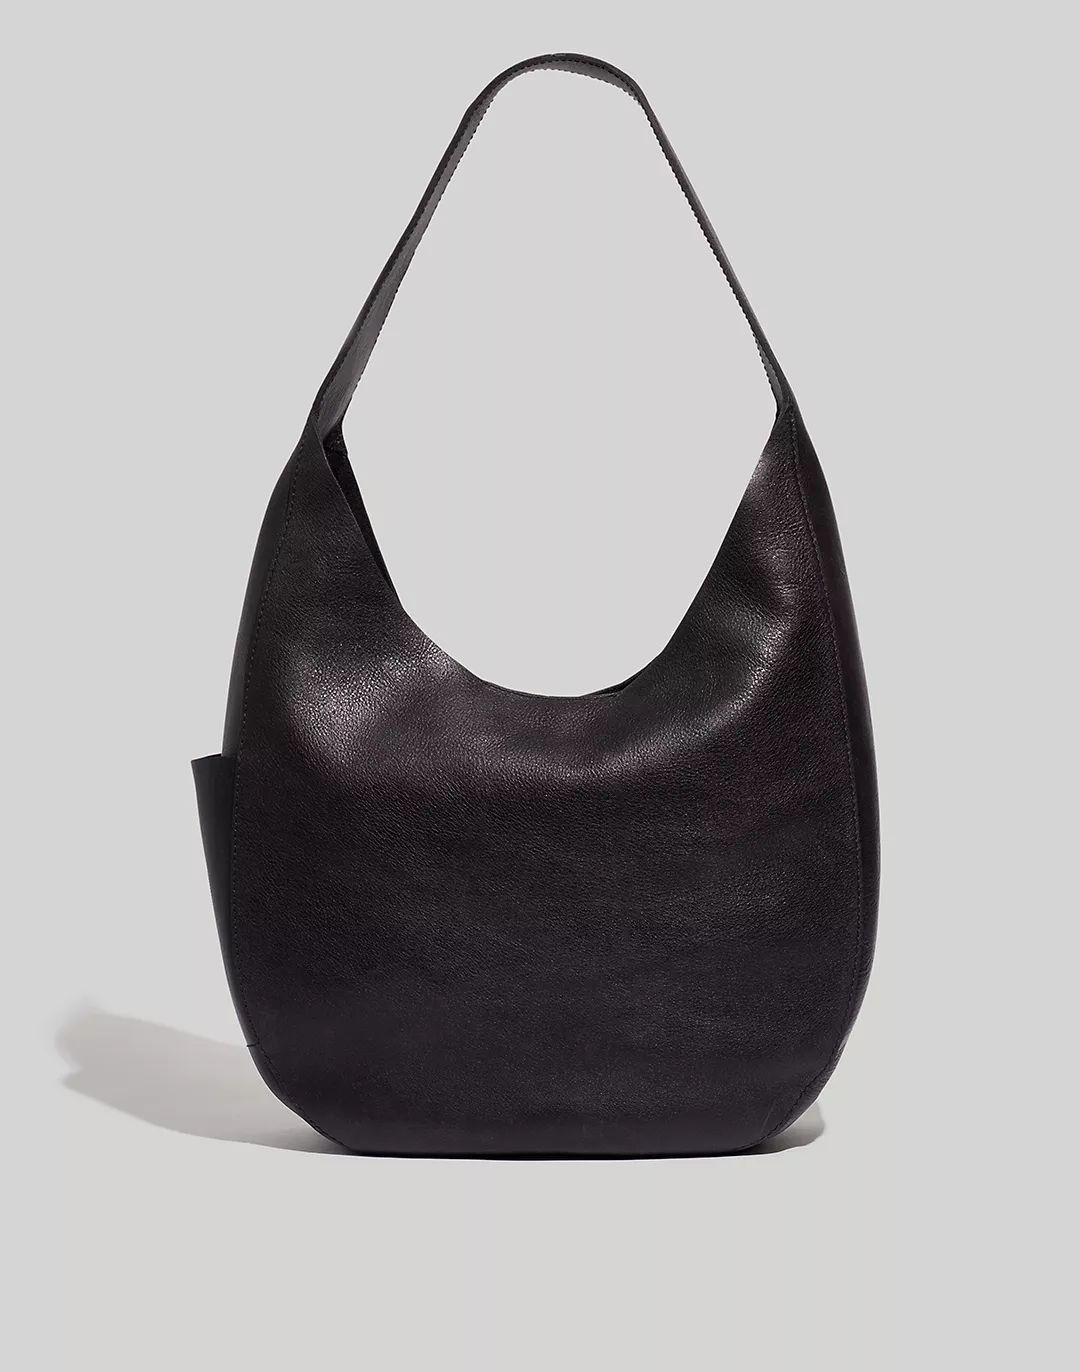 The Oversized Shopper Bag | Madewell